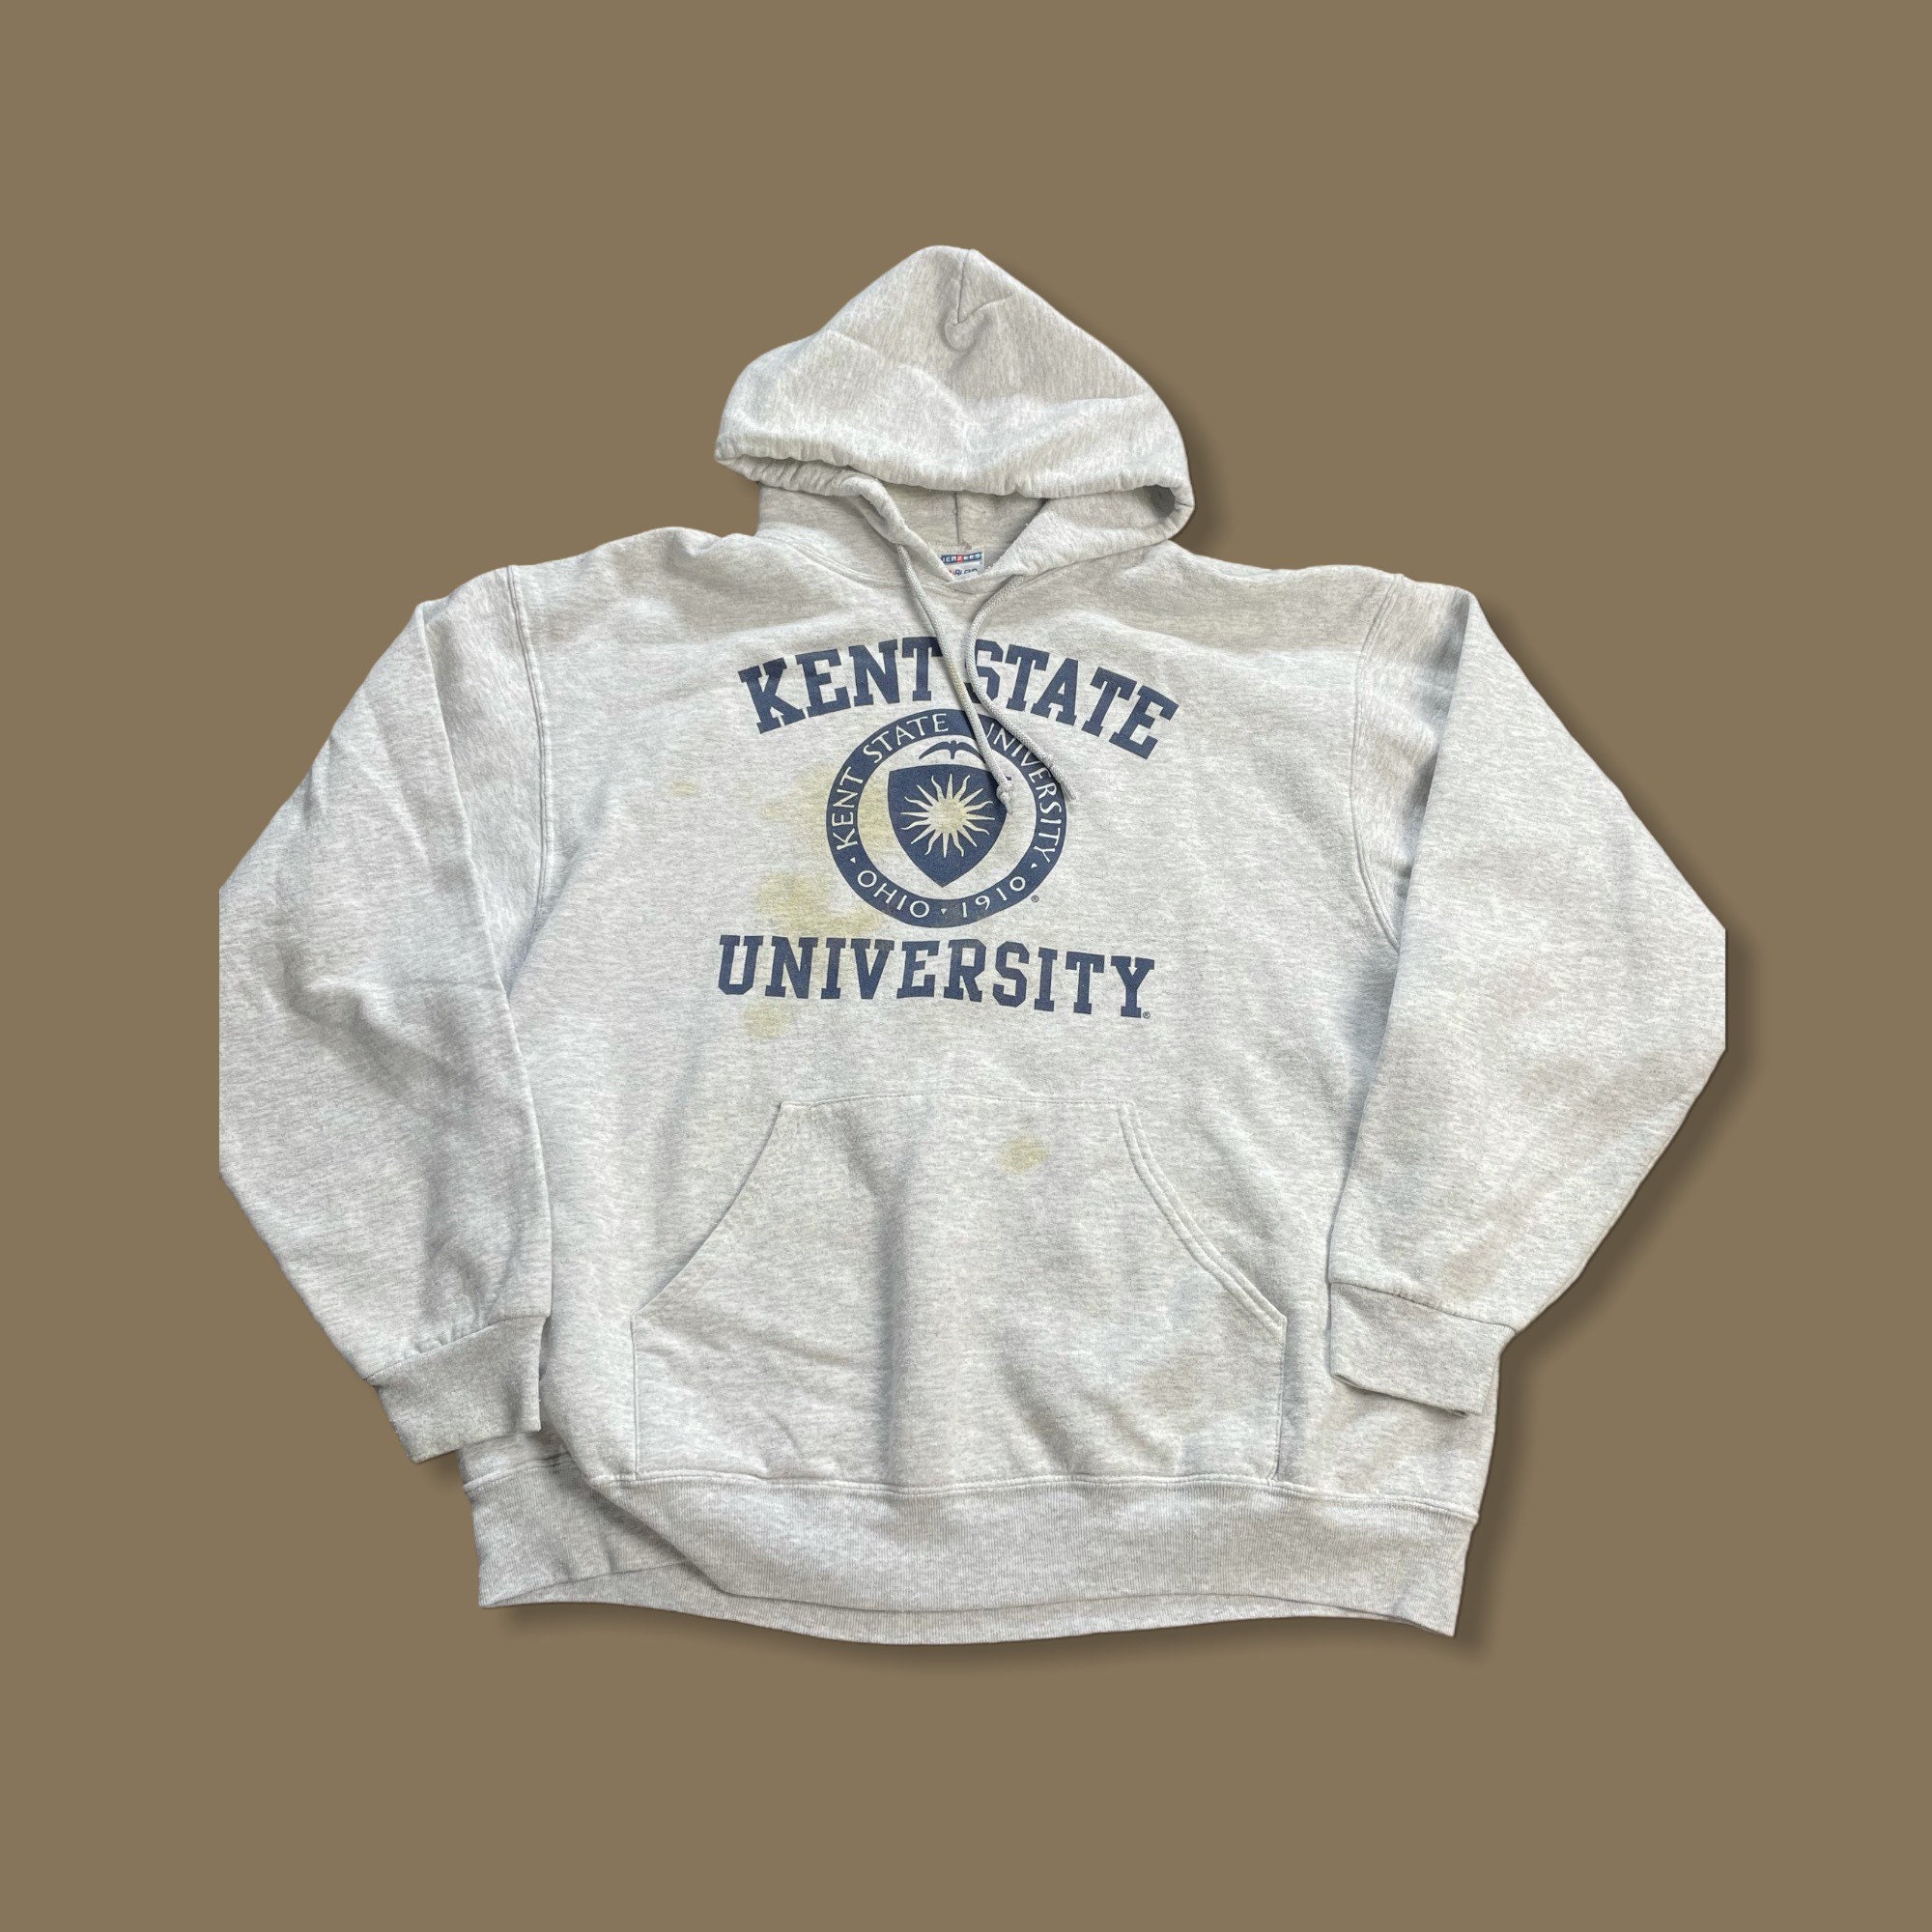 Kent State University NCAA Vintage 90s College Hoodie | Etsy